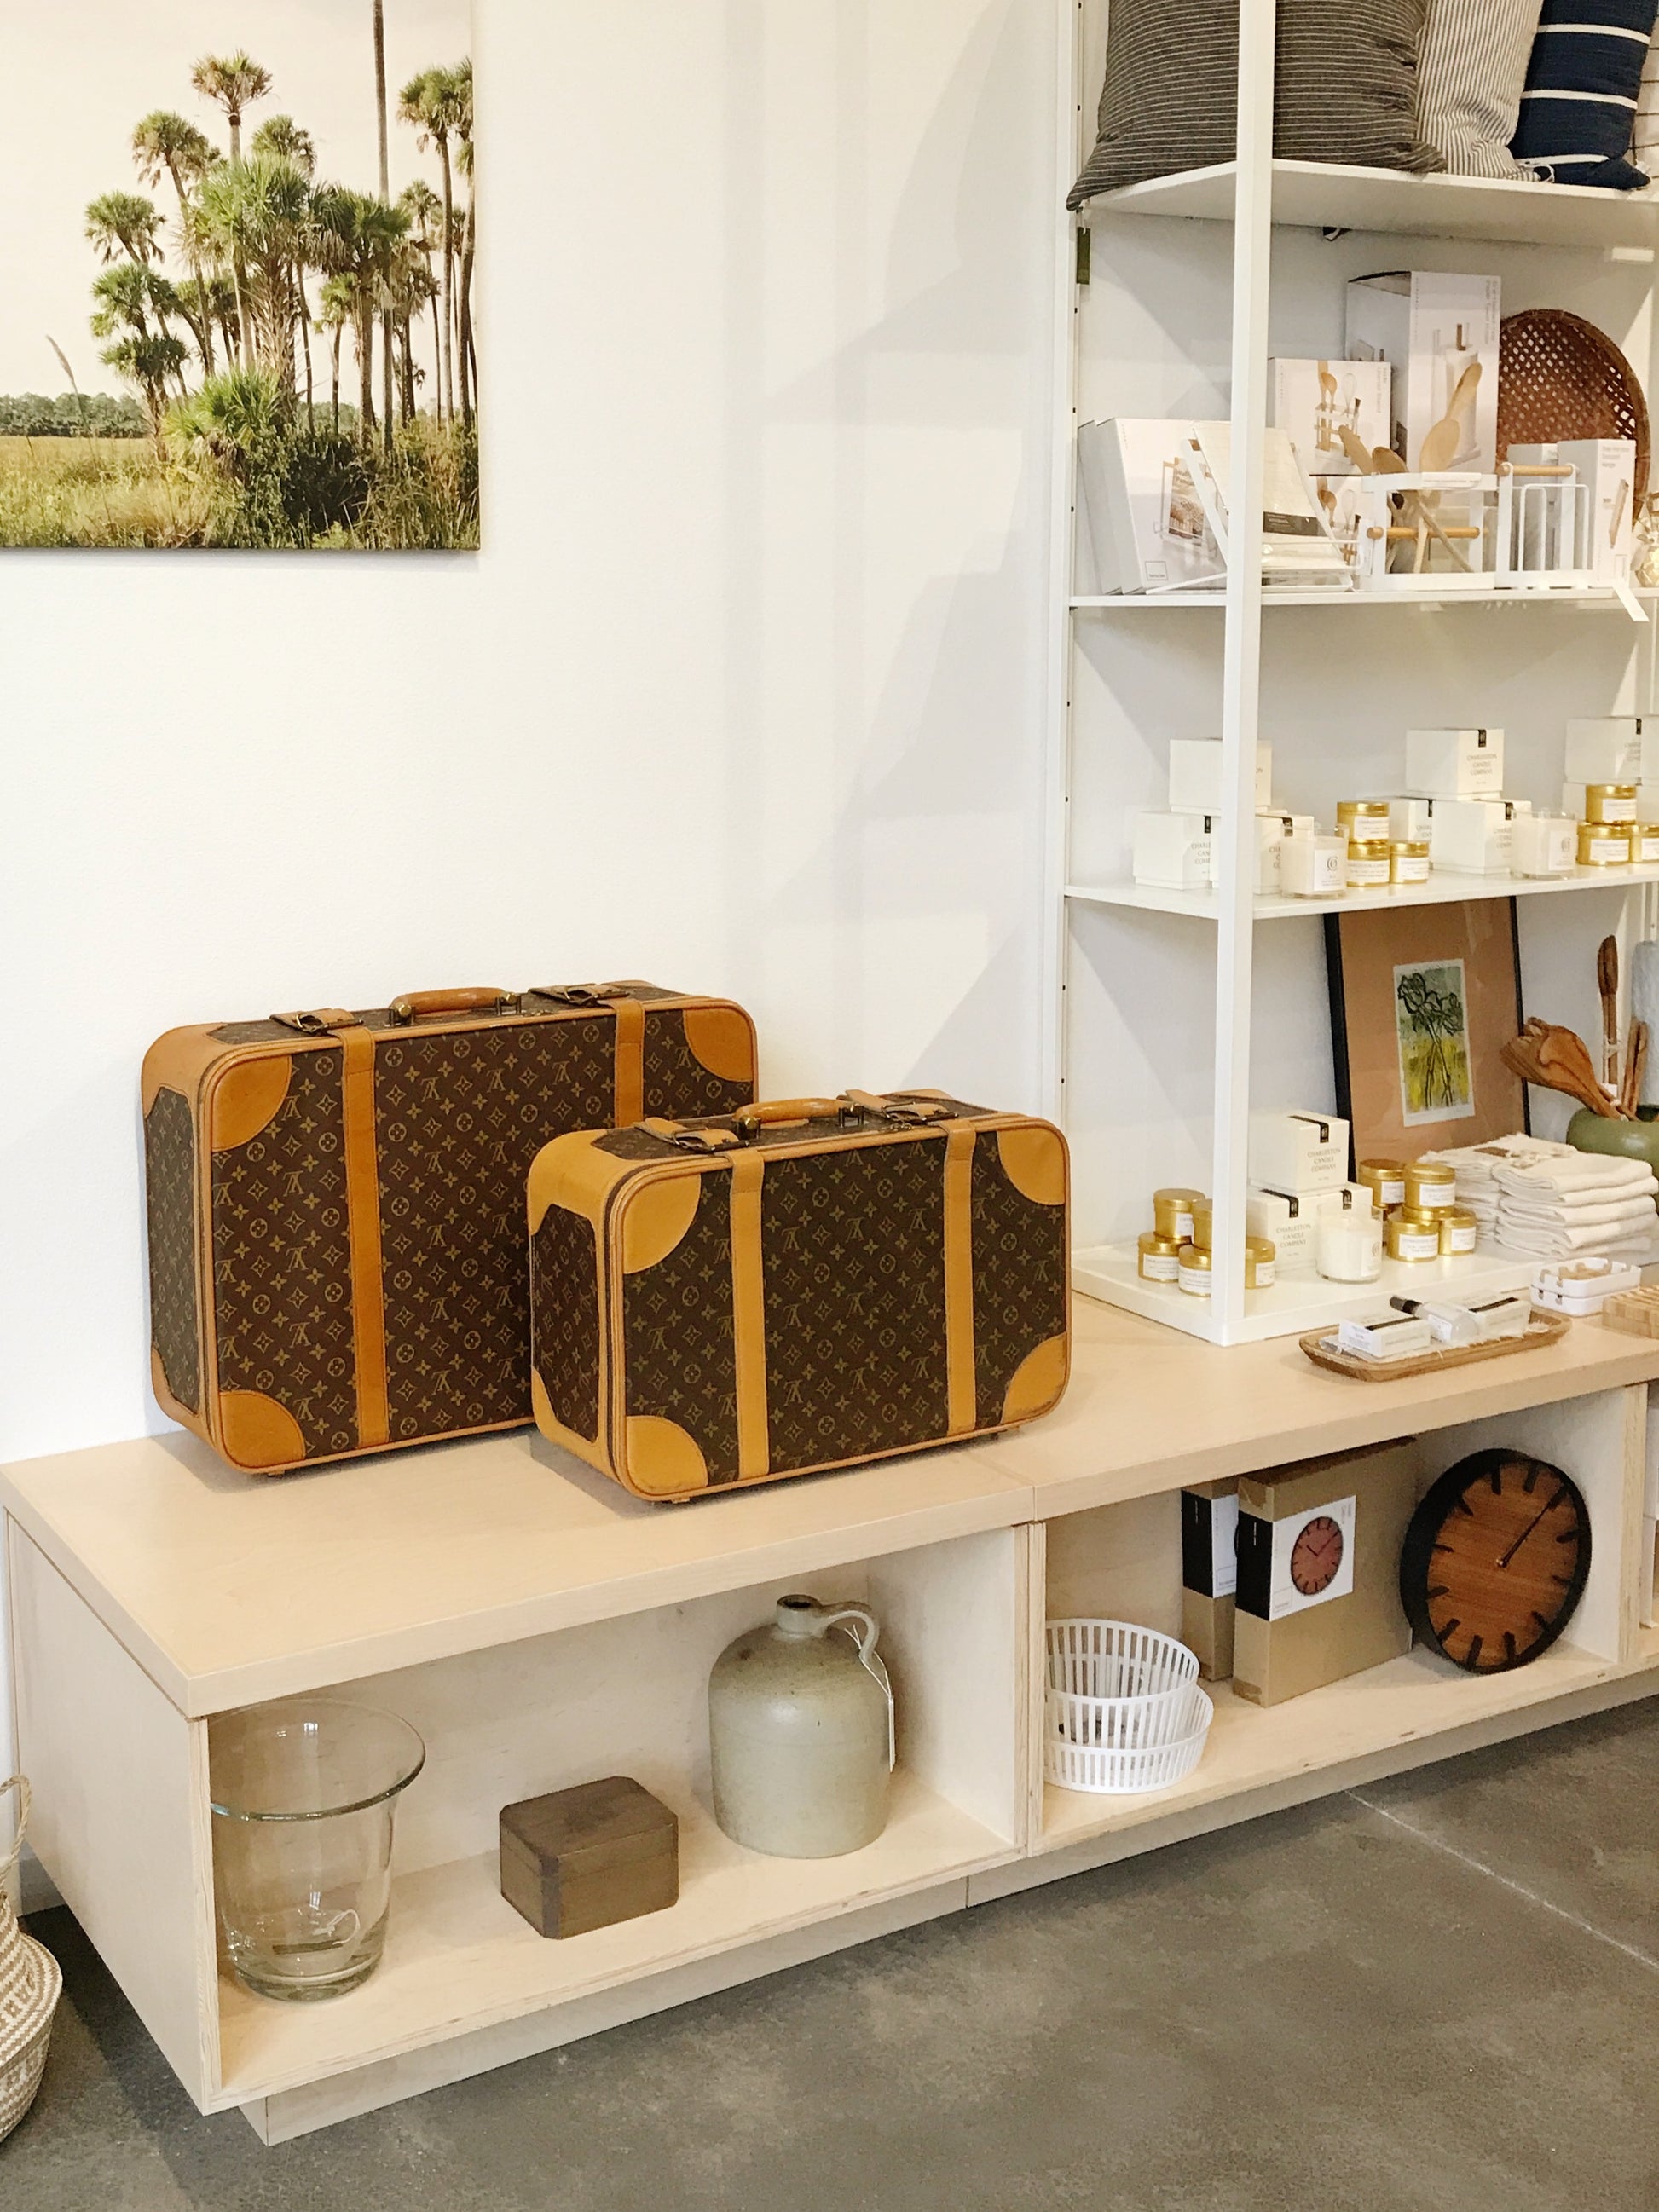 Louis Vuitton - travel bag - clothes rack